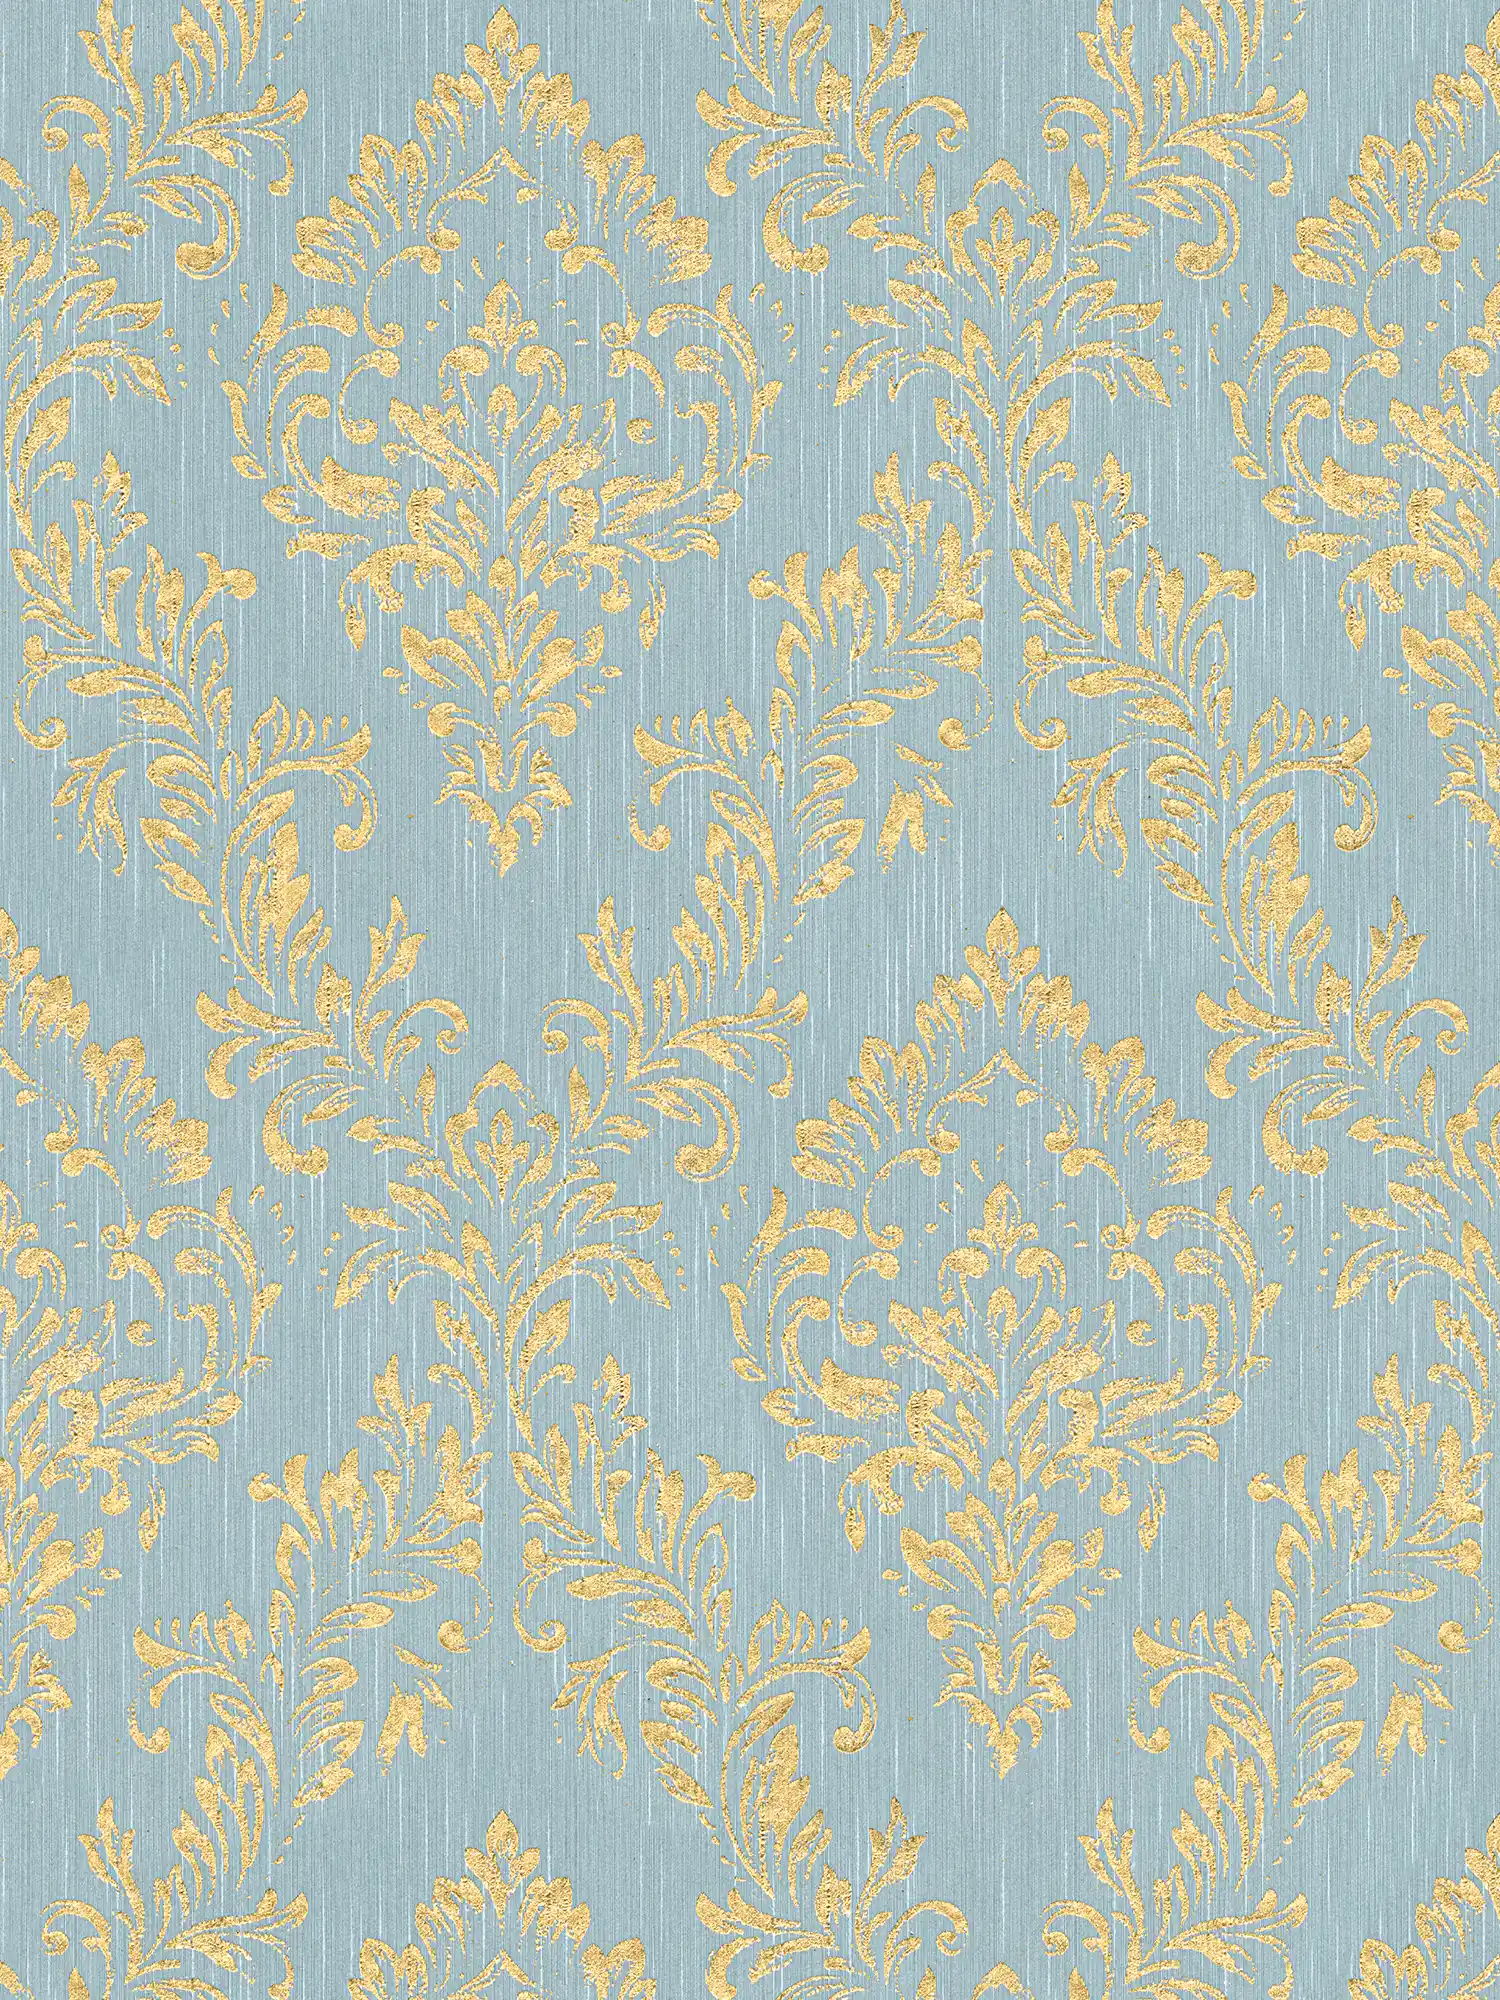         Papier peint ornemental floral avec effet scintillant doré - or, bleu, vert
    